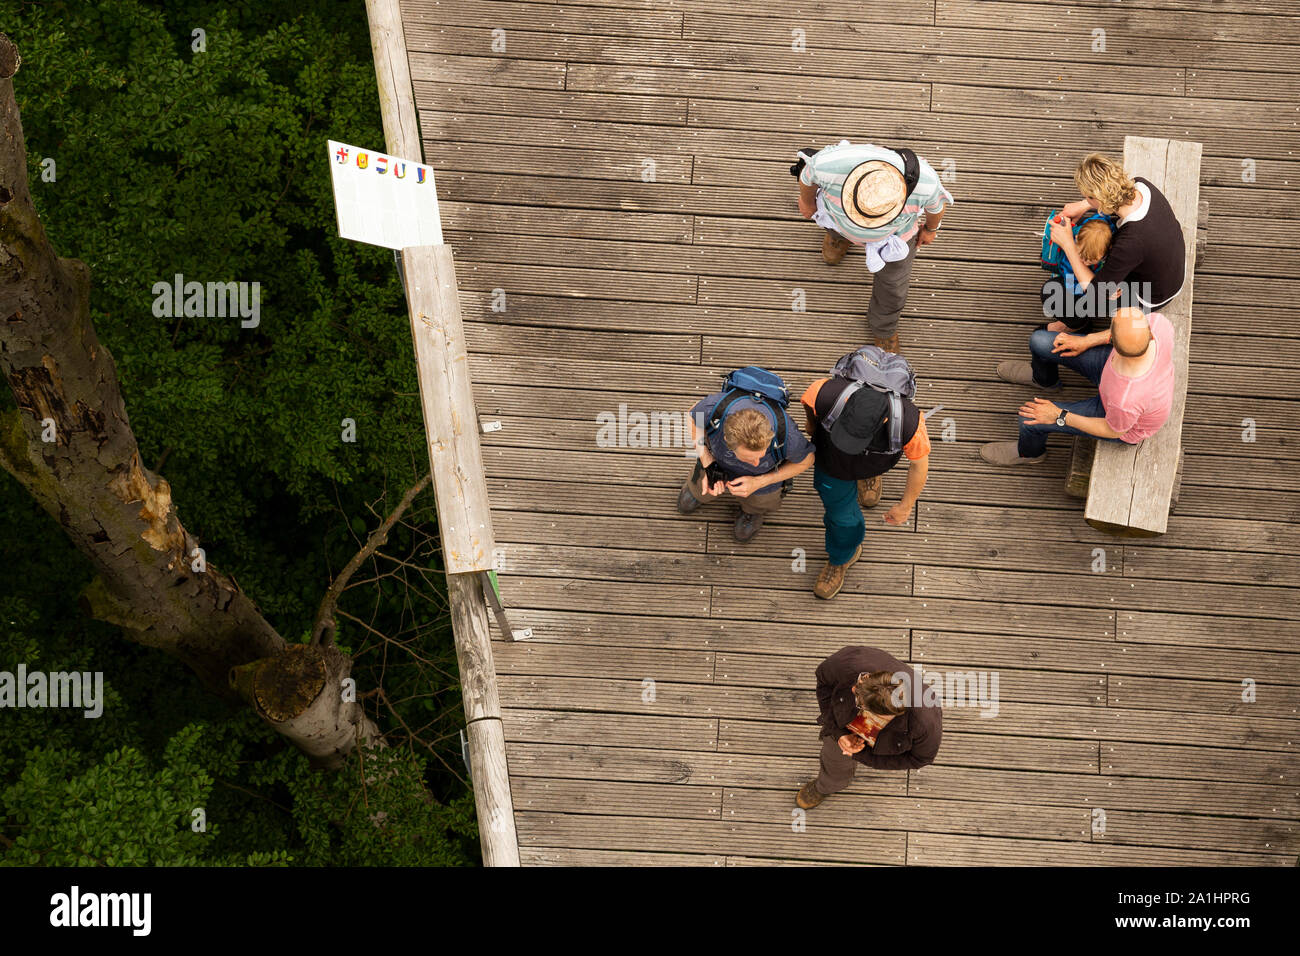 Vue aérienne de personnes marchant sur le sentier de la couronne des arbres dans le Parc National de Hainich Thuringe, Allemagne Banque D'Images